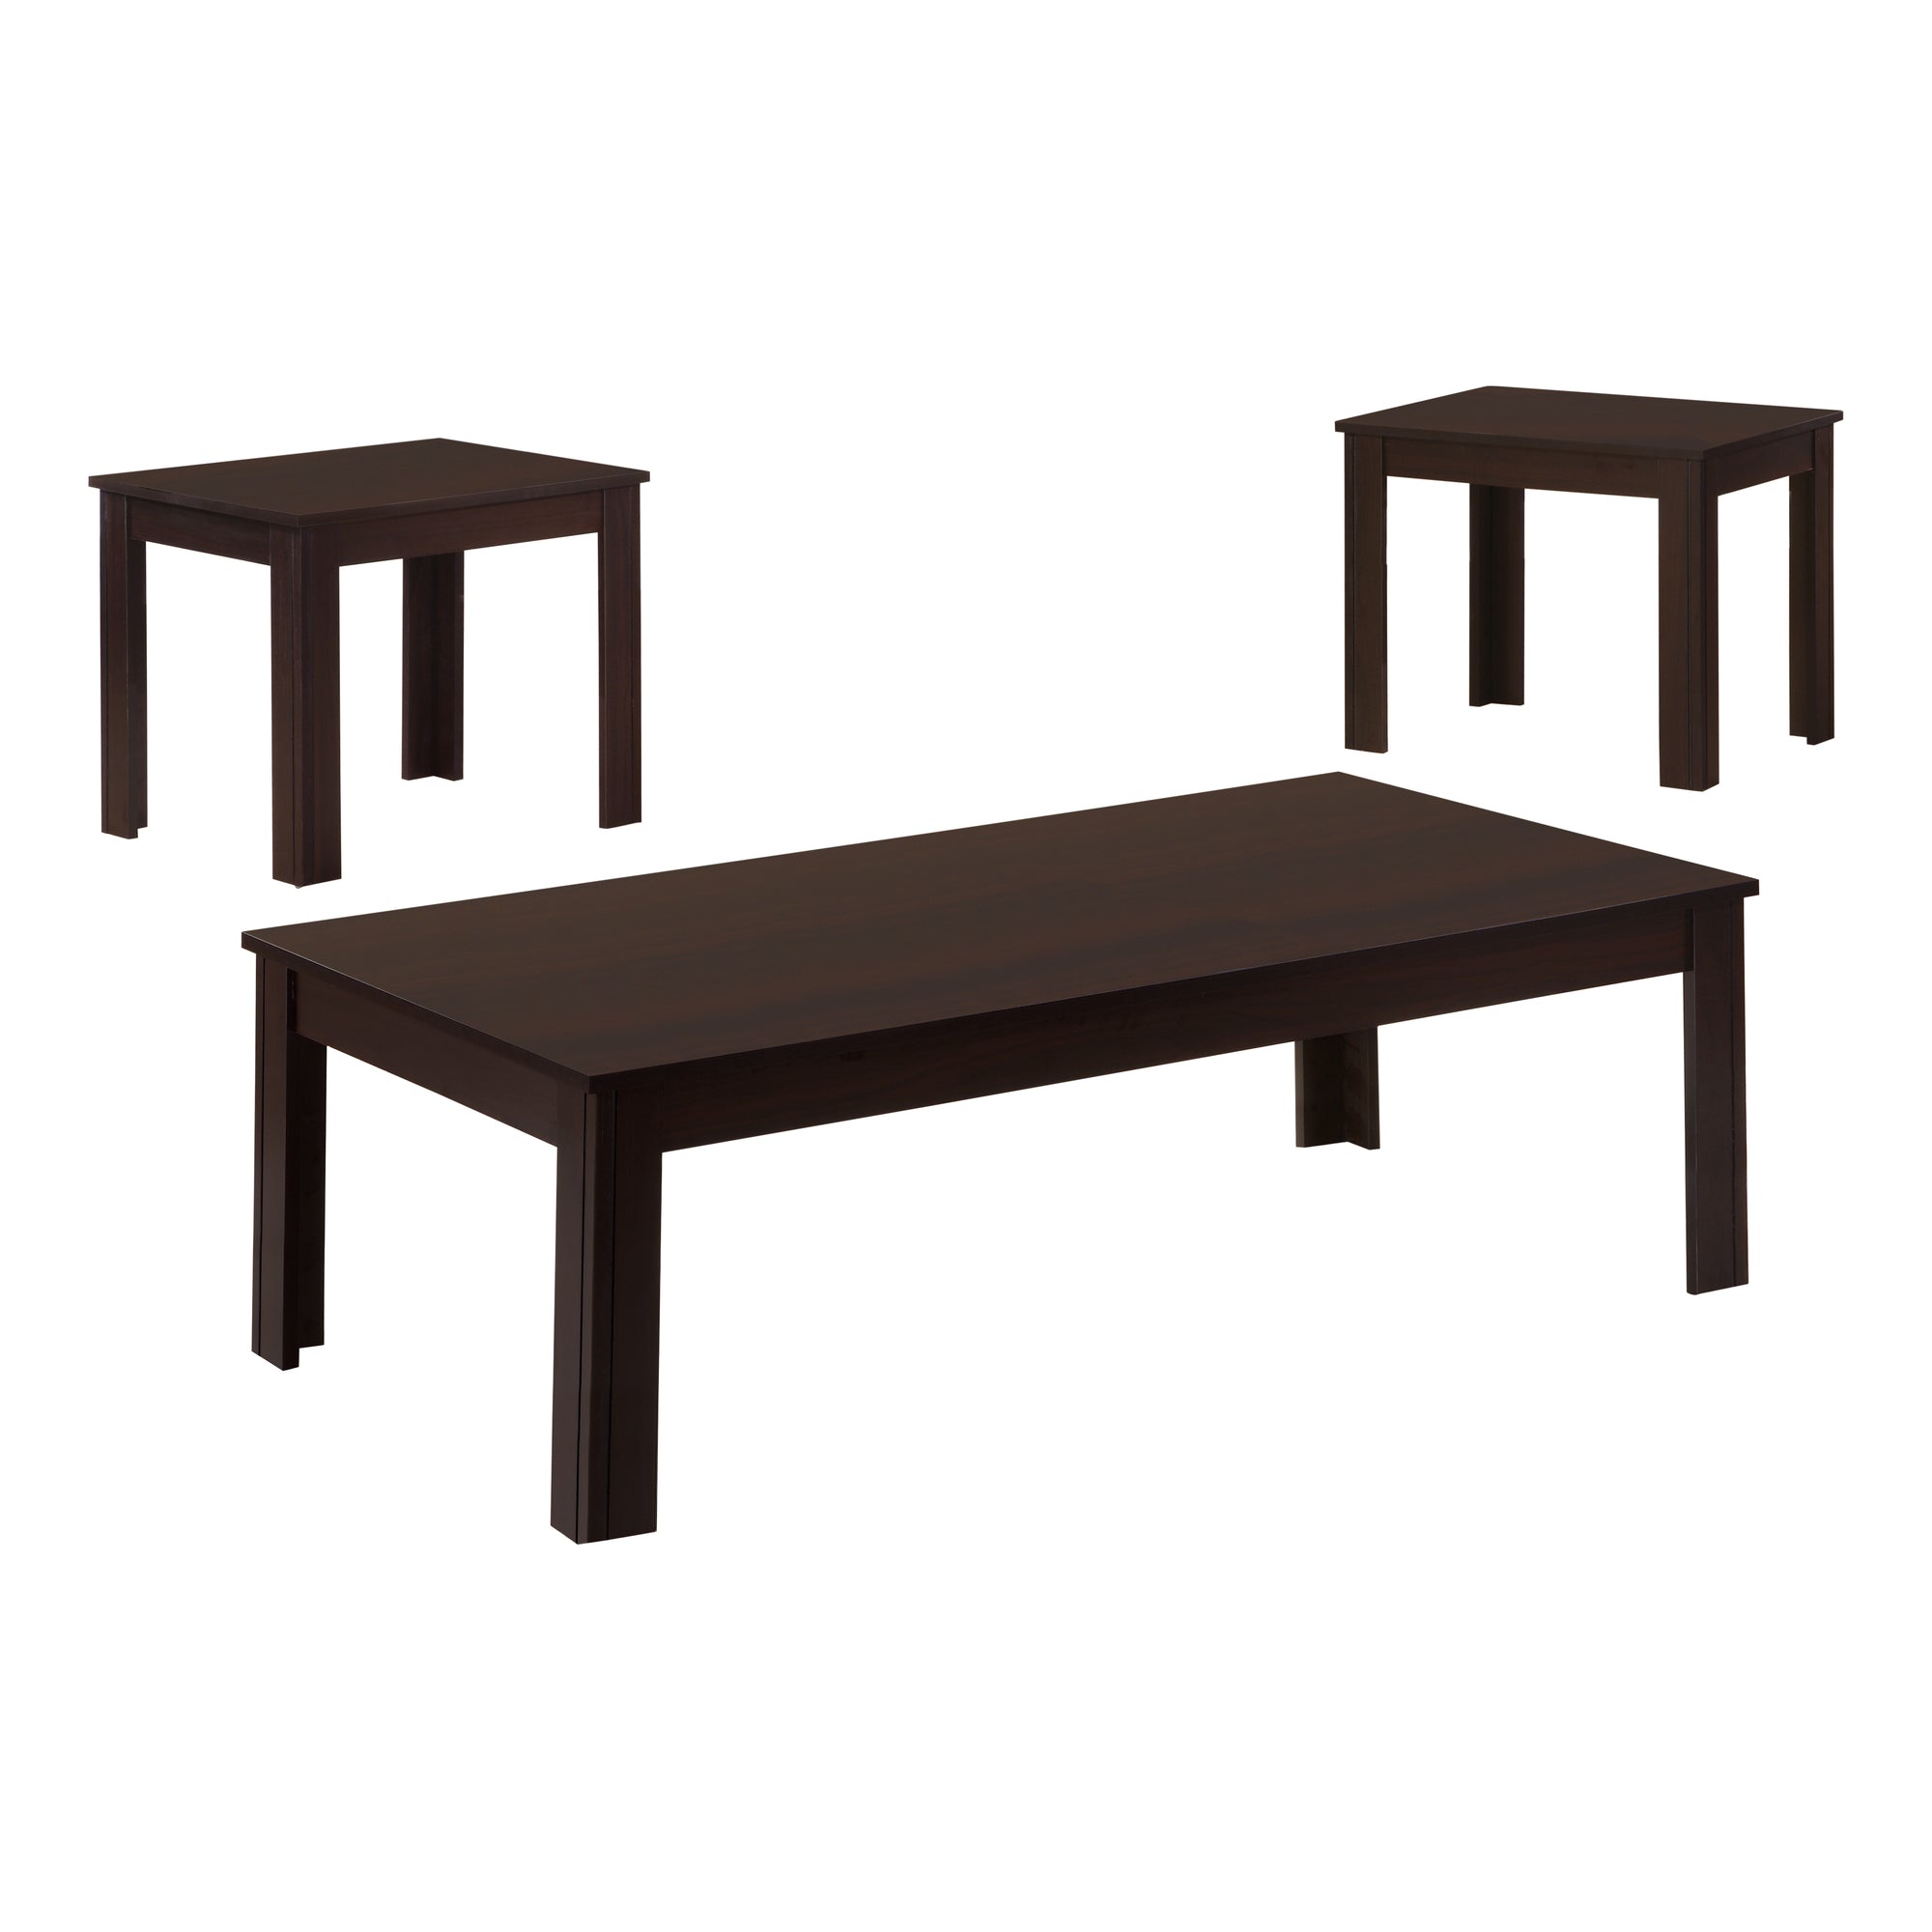 Table Set - 3Pcs Set / Espresso